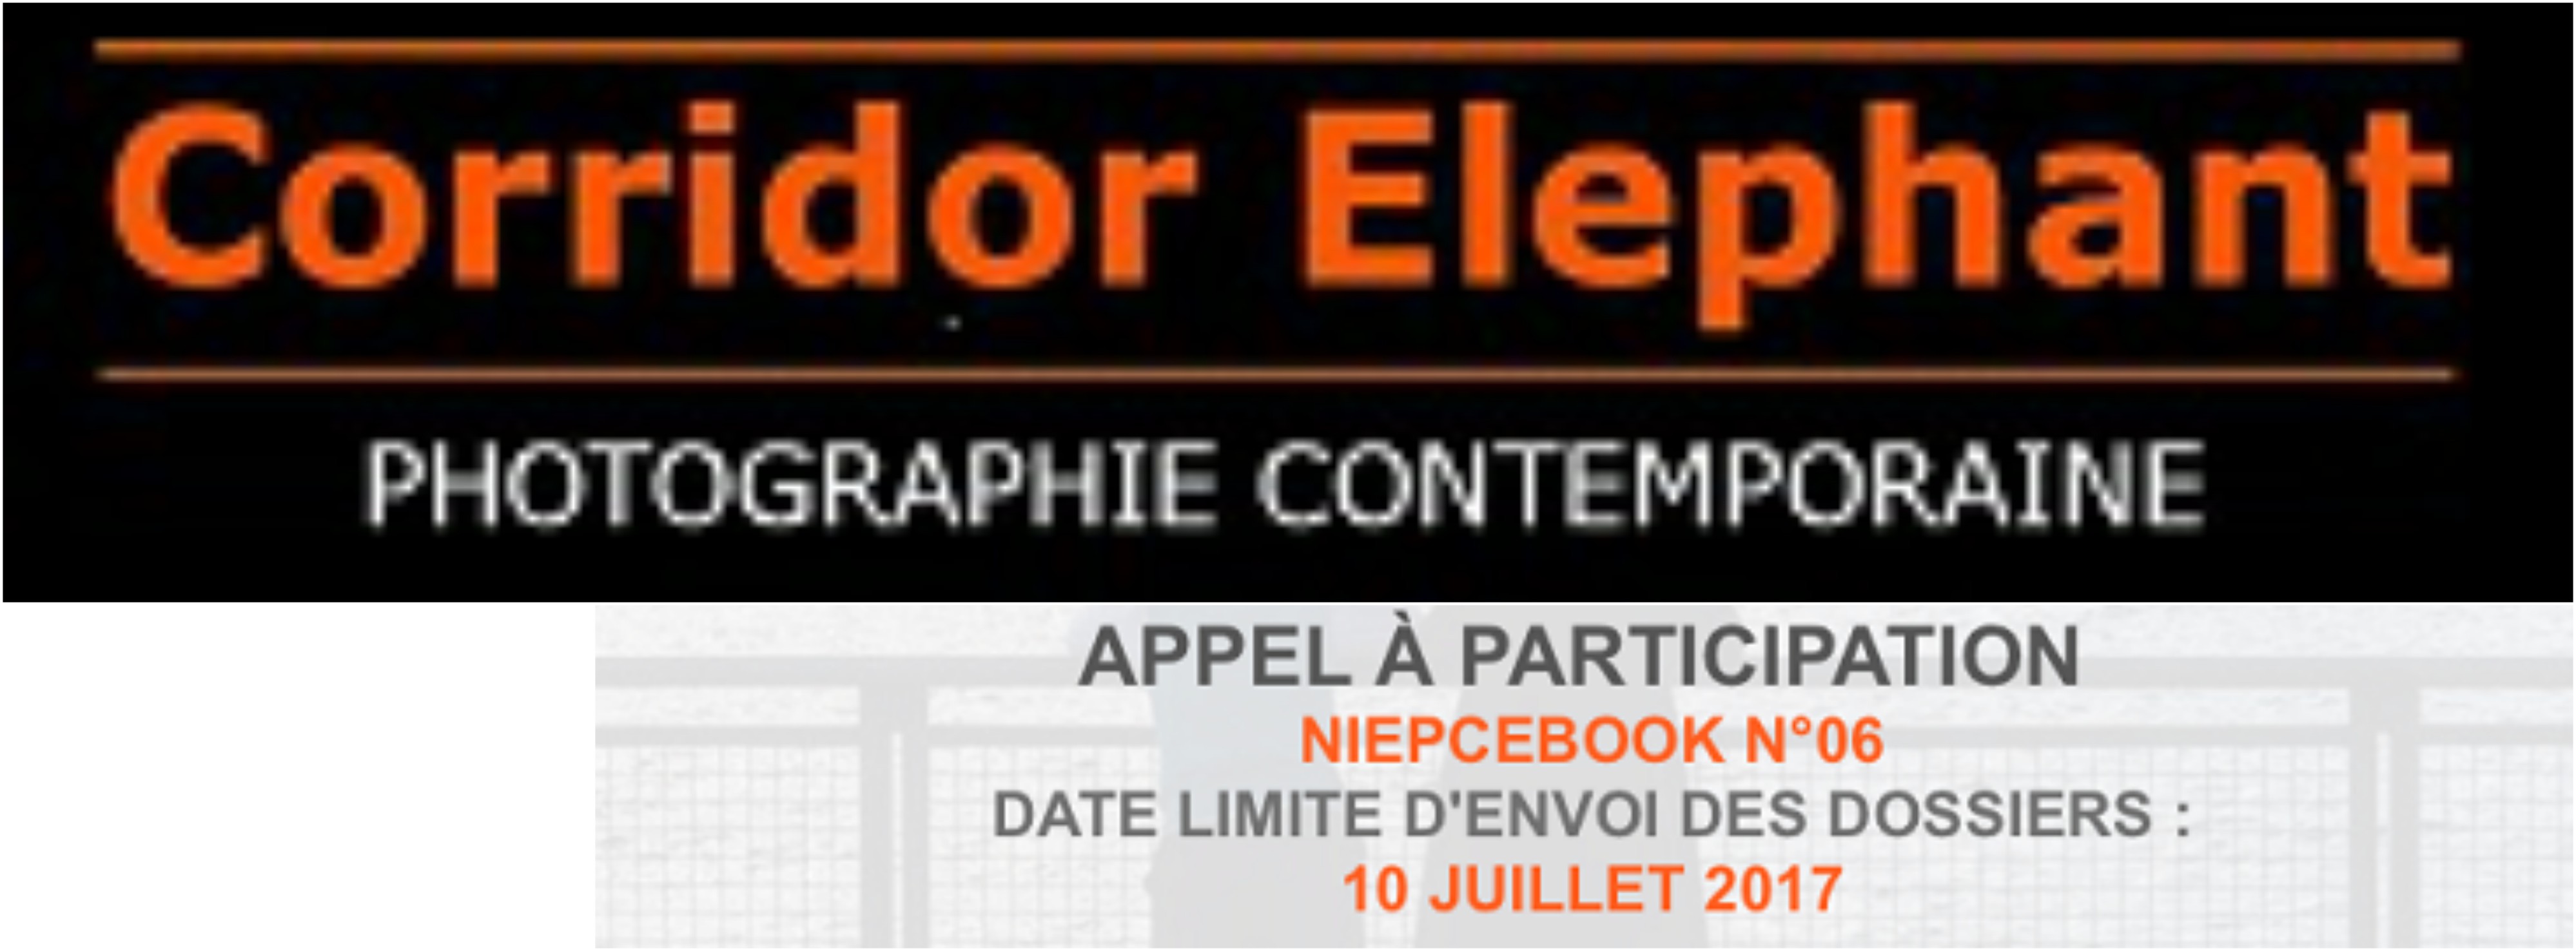 Appel à participation pour le NIEPCEBOOK n°6 de Corridor Elephant